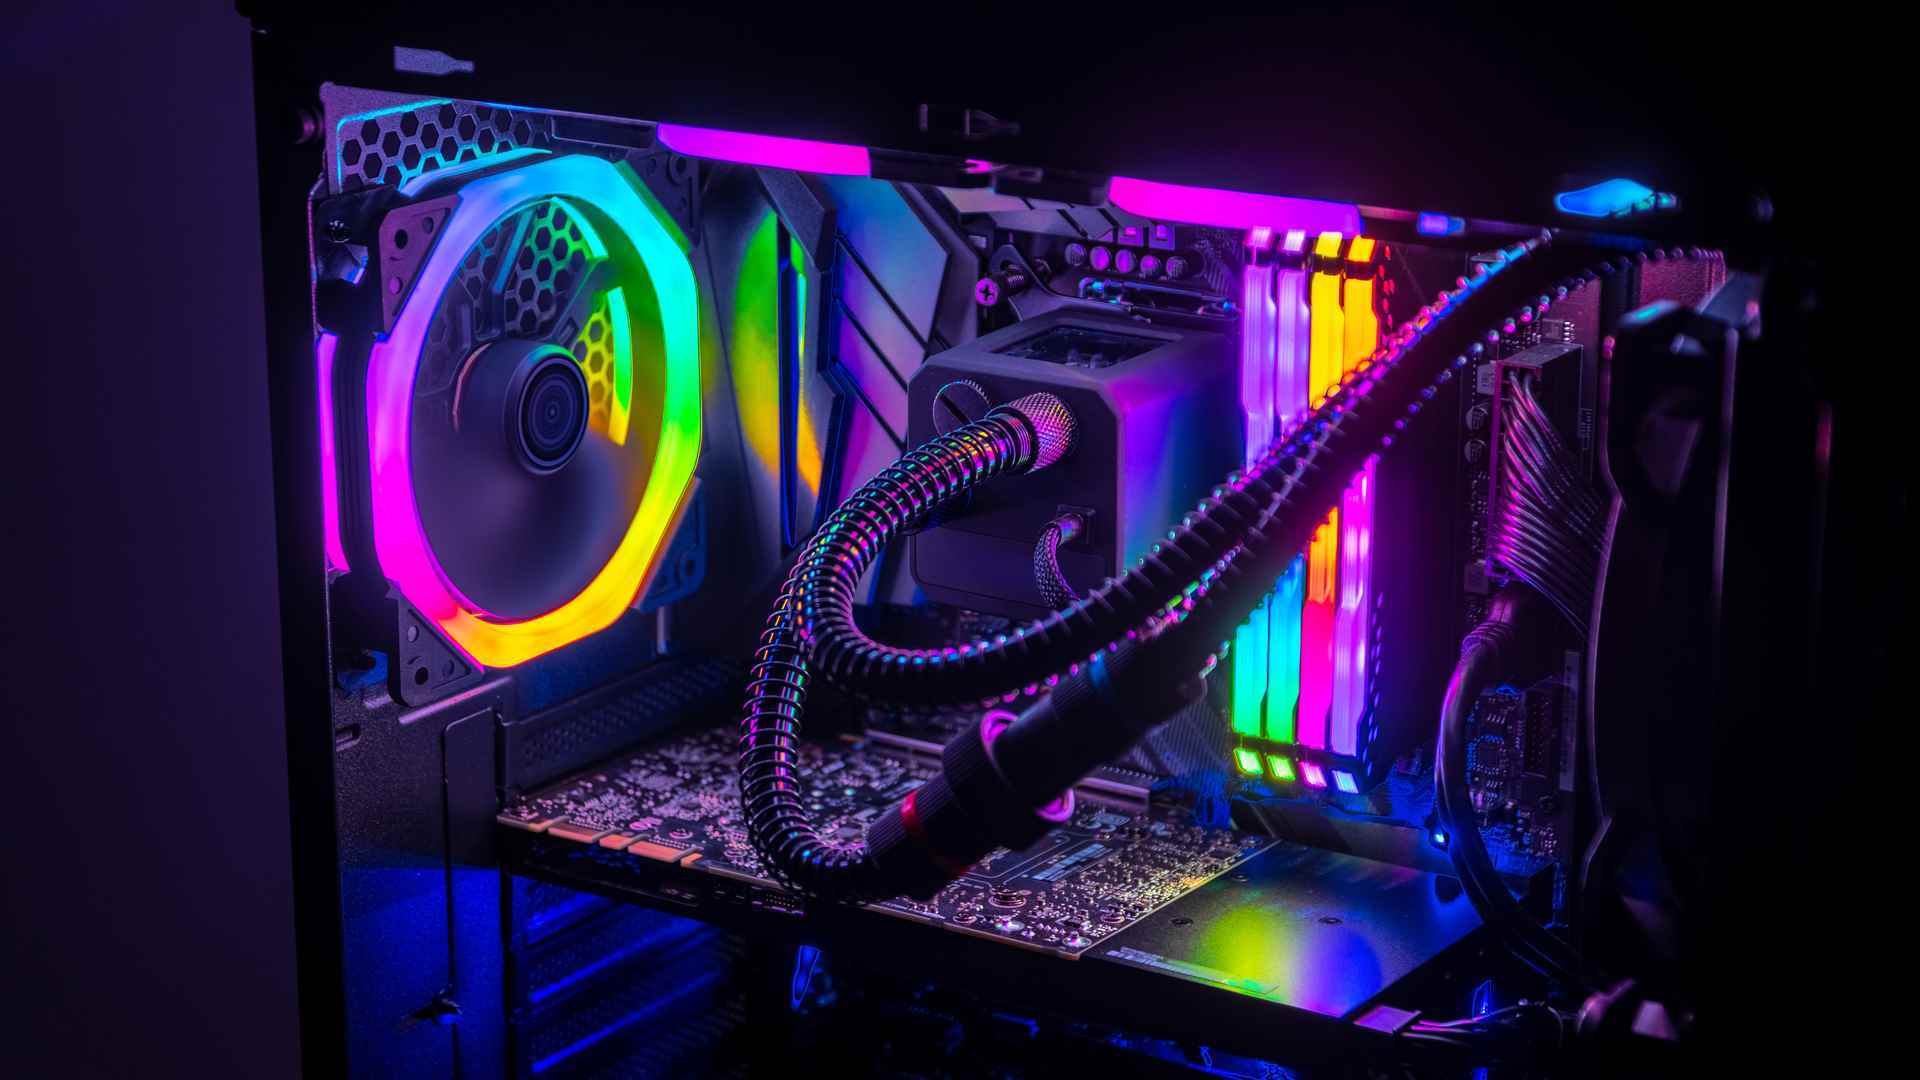 Çok sayıda RGB aydınlatmaya sahip bir oyun bilgisayarının içi